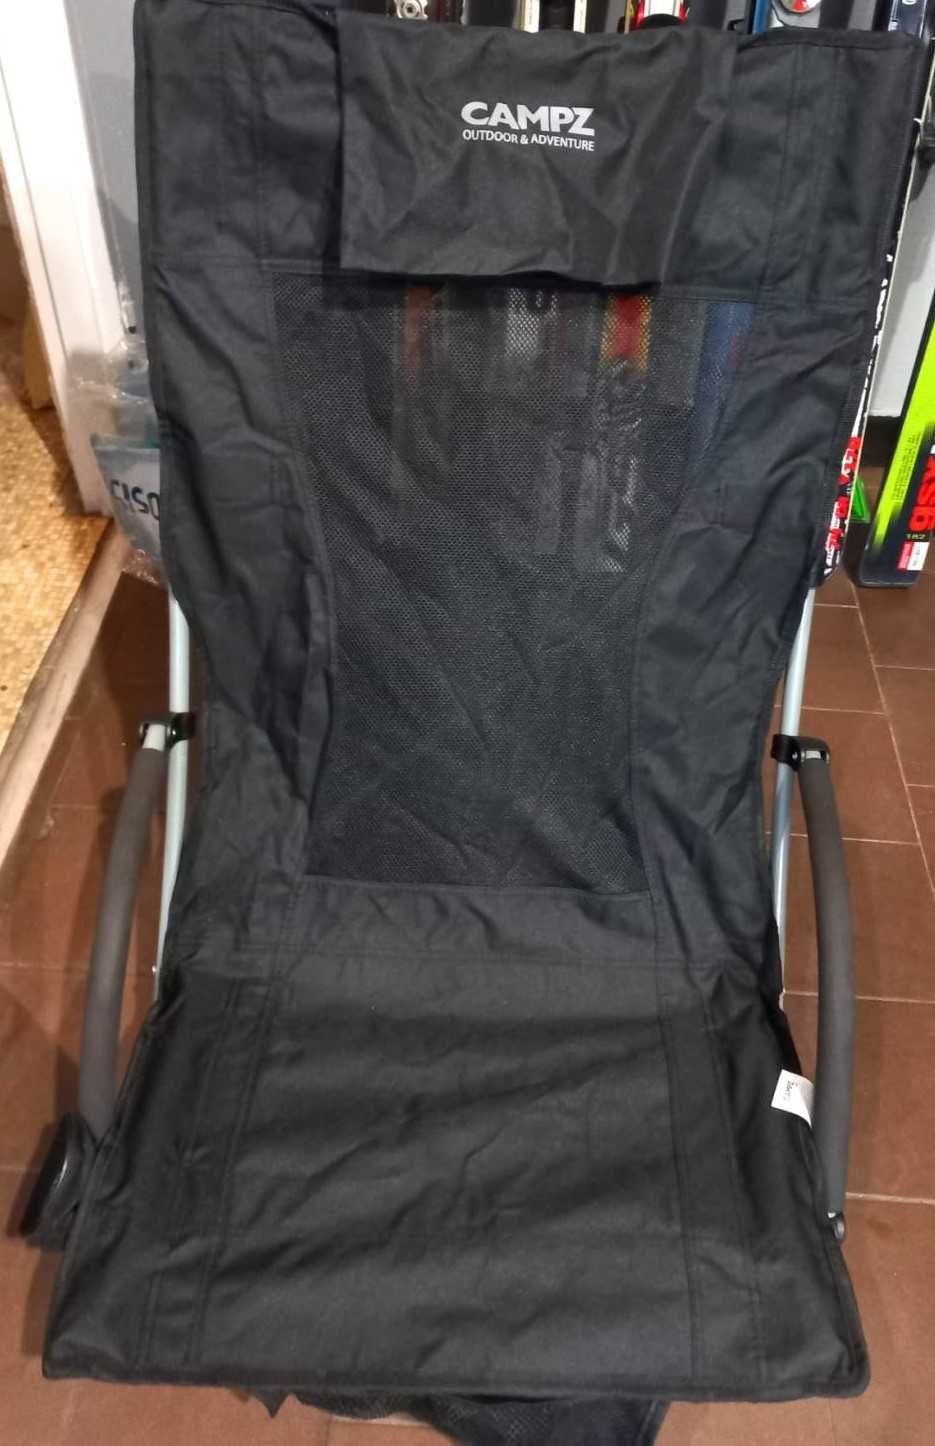 POWYSTAWOWE Krzesło Turystyczne CAMPZ BEACH Chair Czarne OKAZJA!